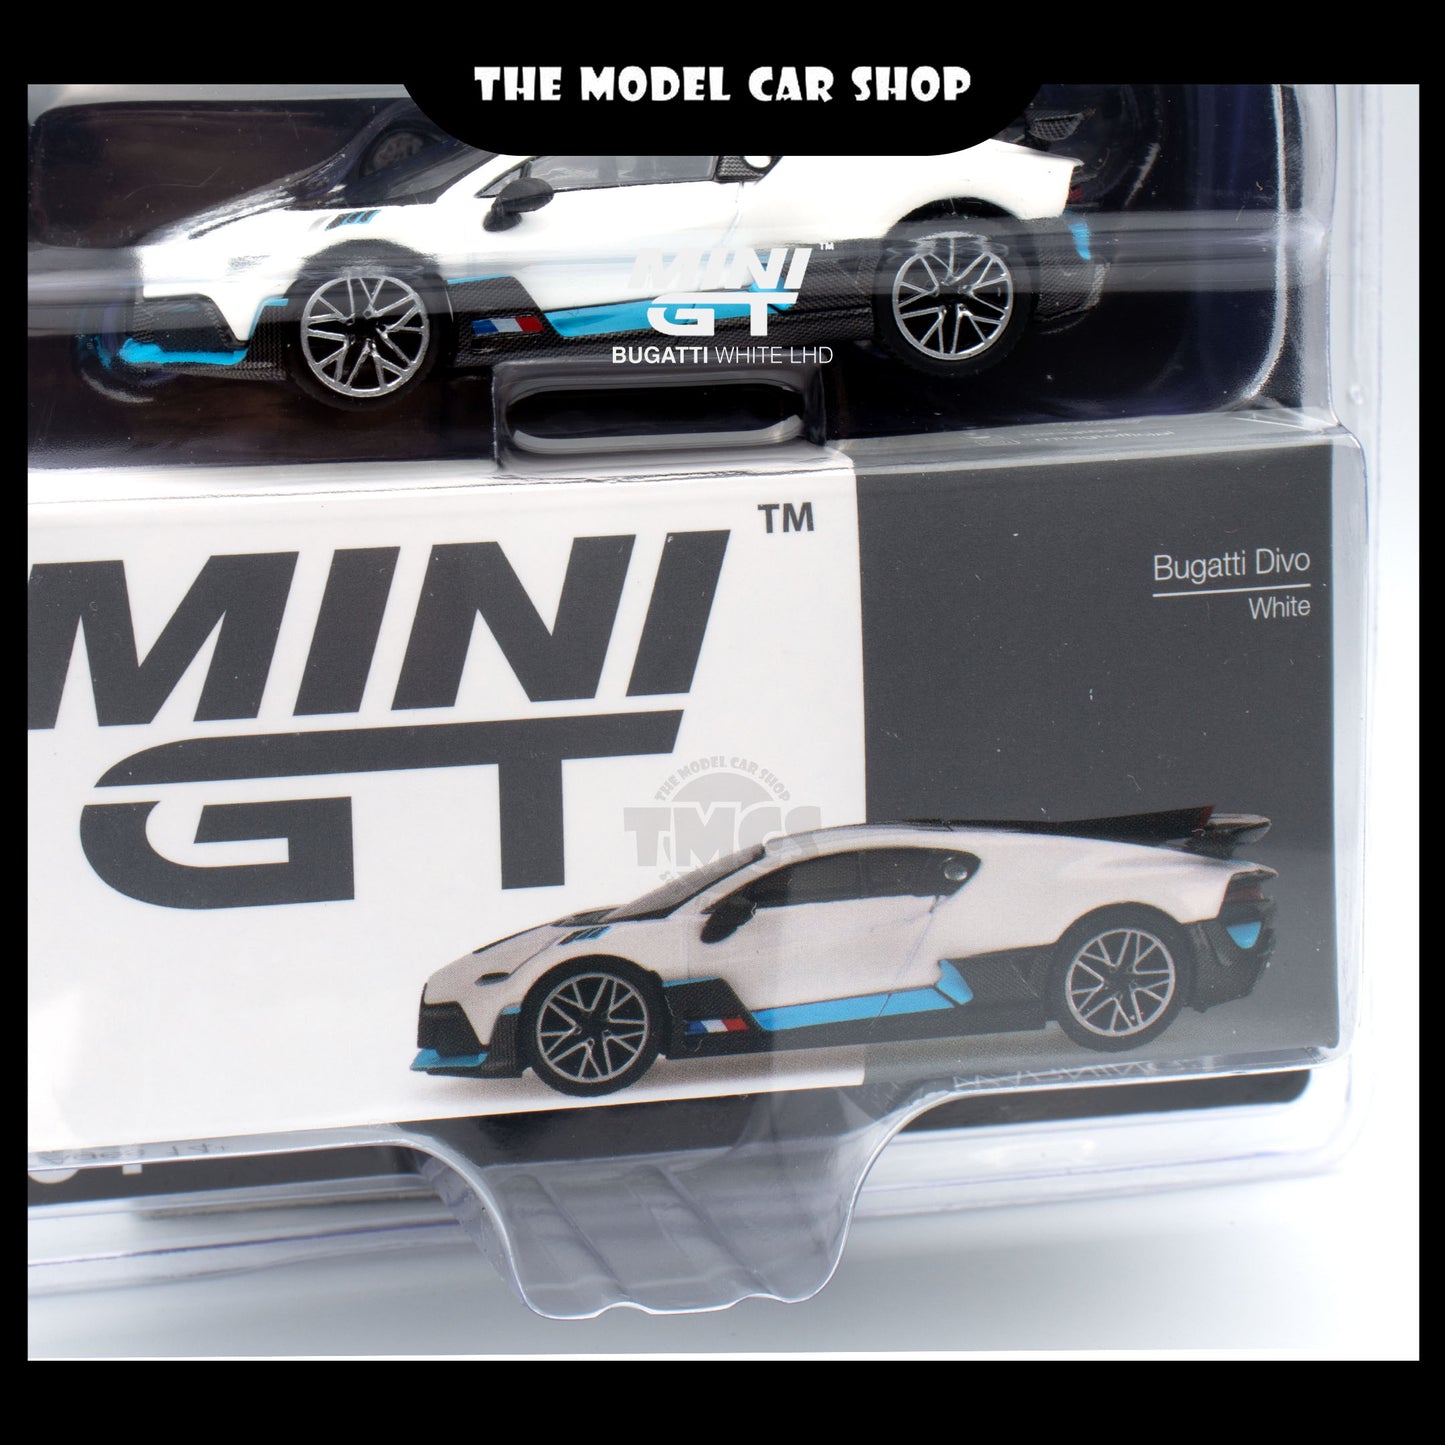 [MINI GT] Bugatti Divo - White (Mijo Exclusive)